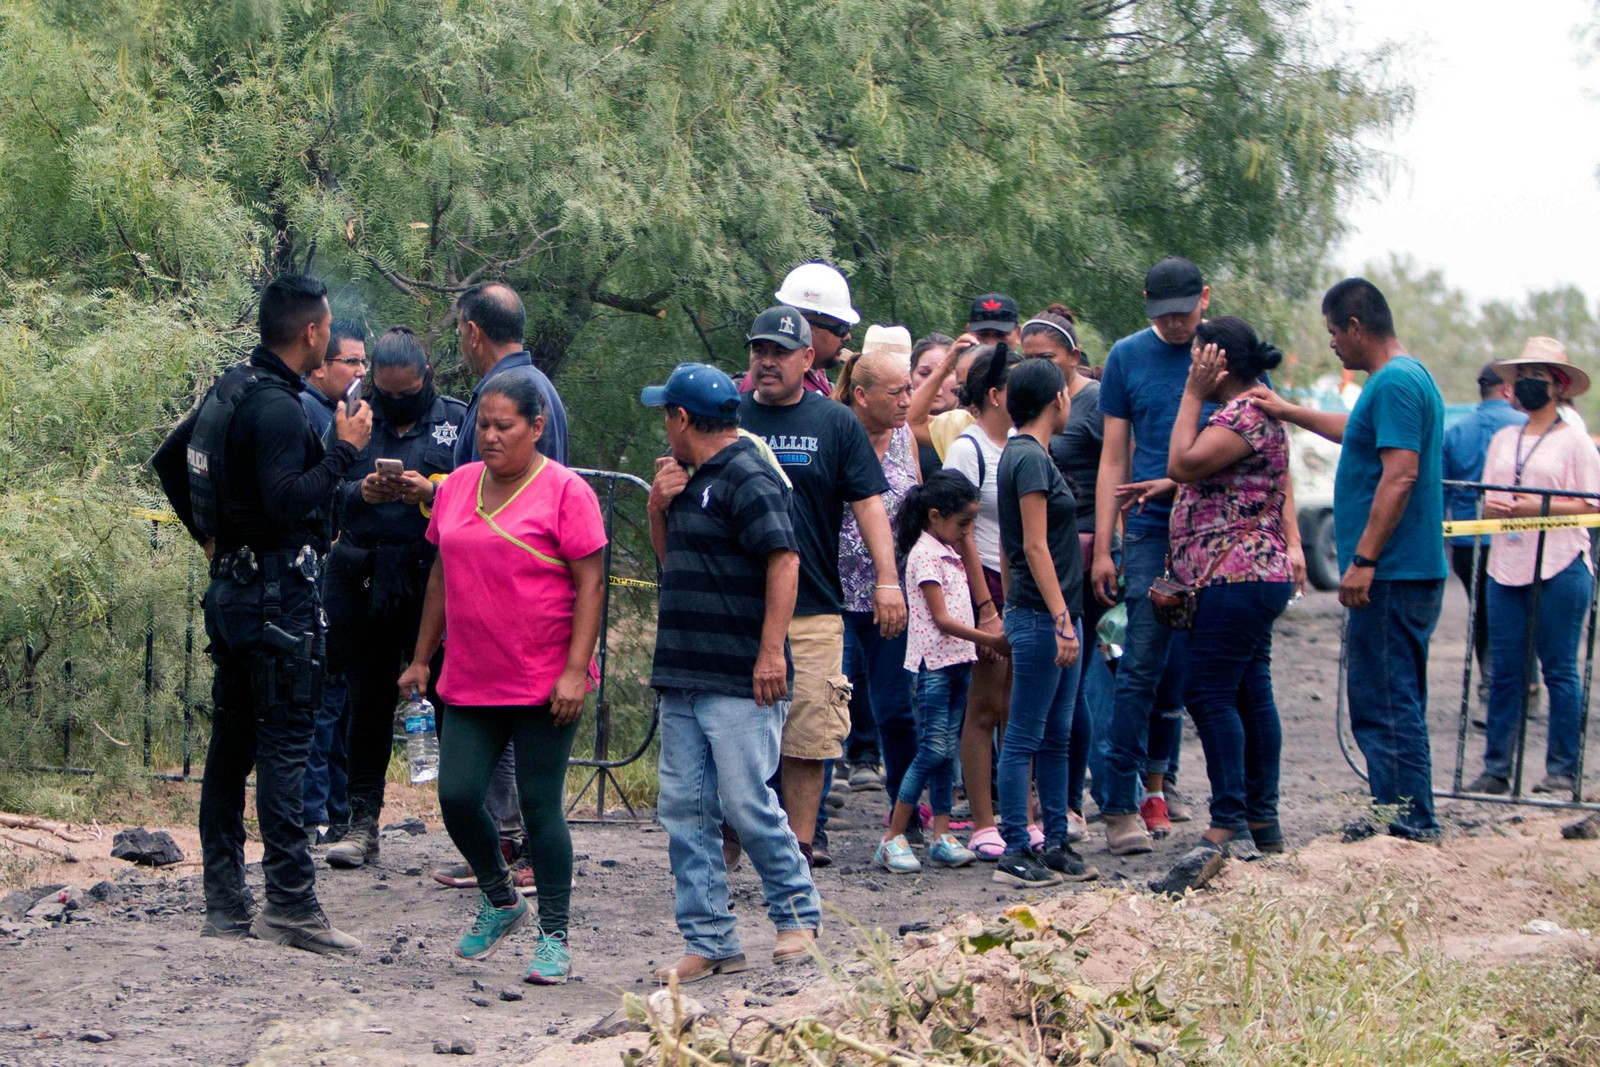 Parentes esperam por notícias em área próxima à mina — Foto: Julio Cesar AGUILAR / AFP